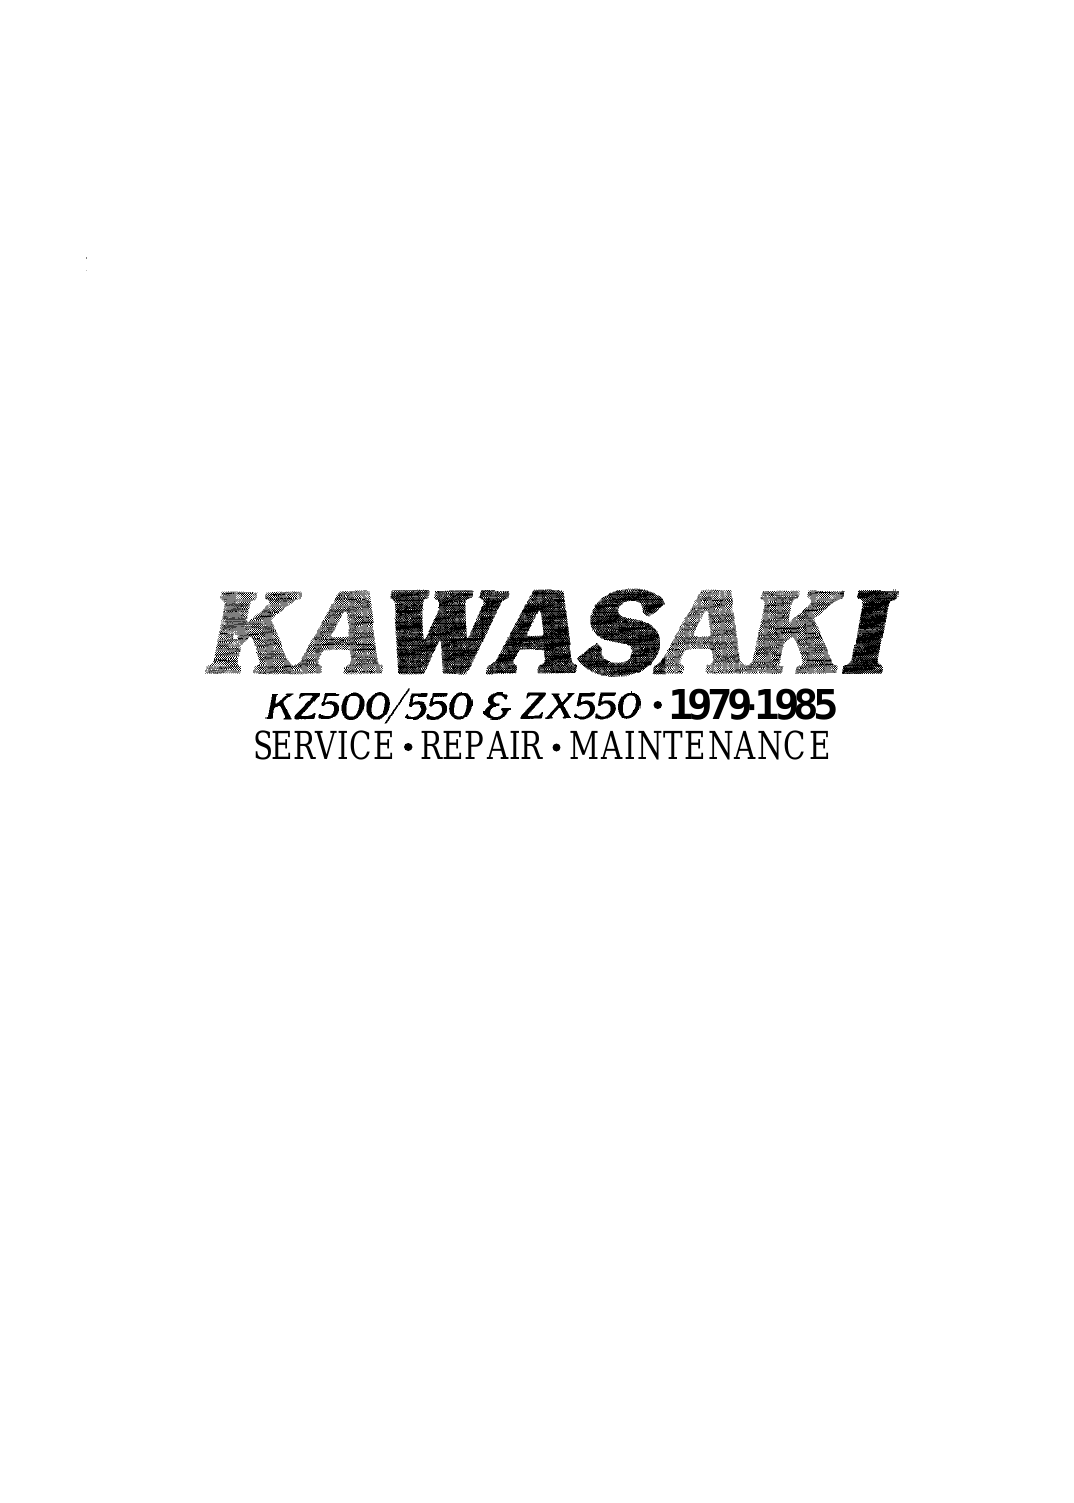 Kawasaki KZ550 sport bike repair manual Preview image 1